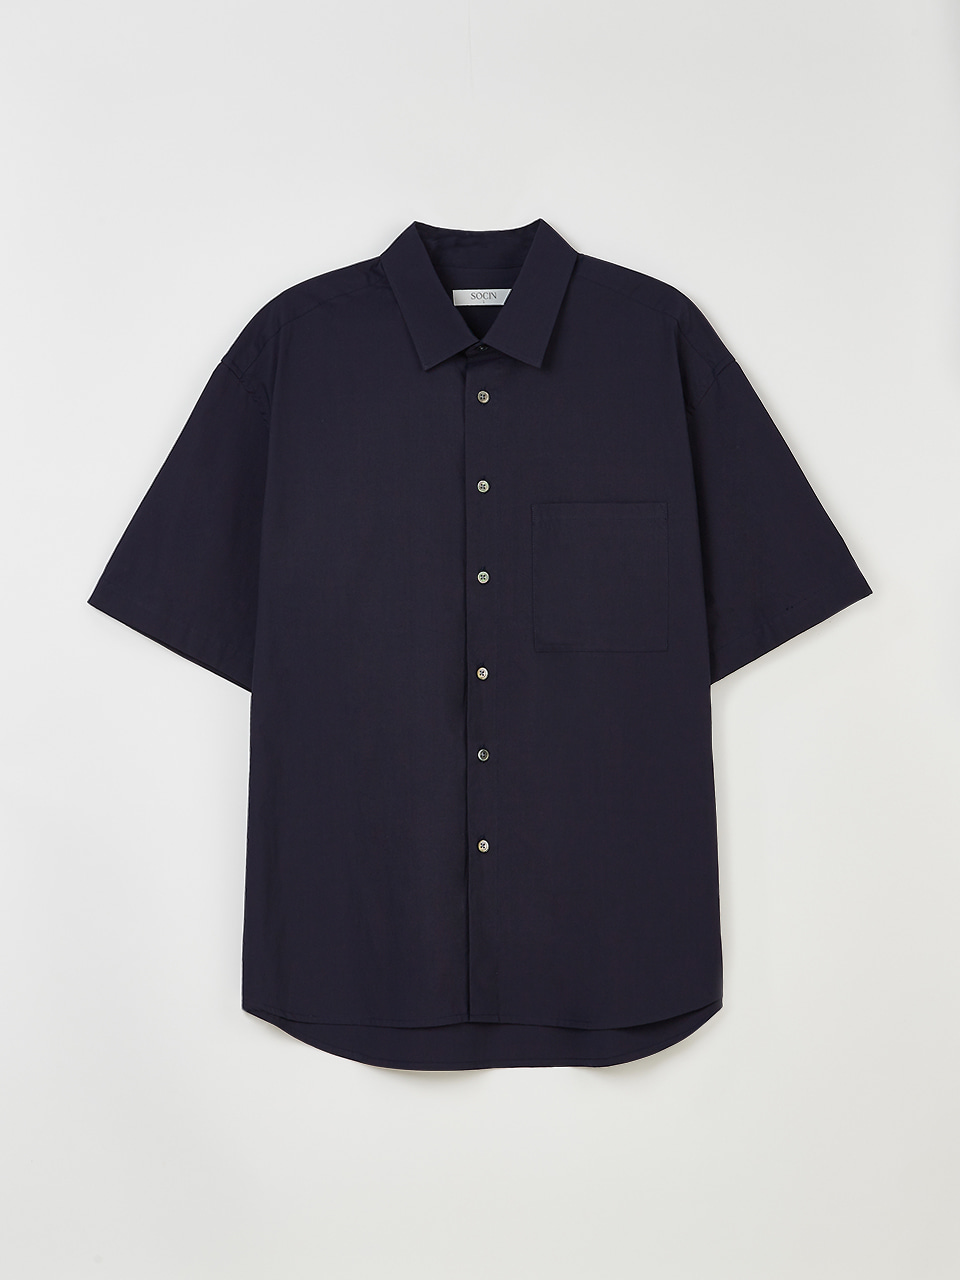 Washer Cotton Half Shirt (Navy)